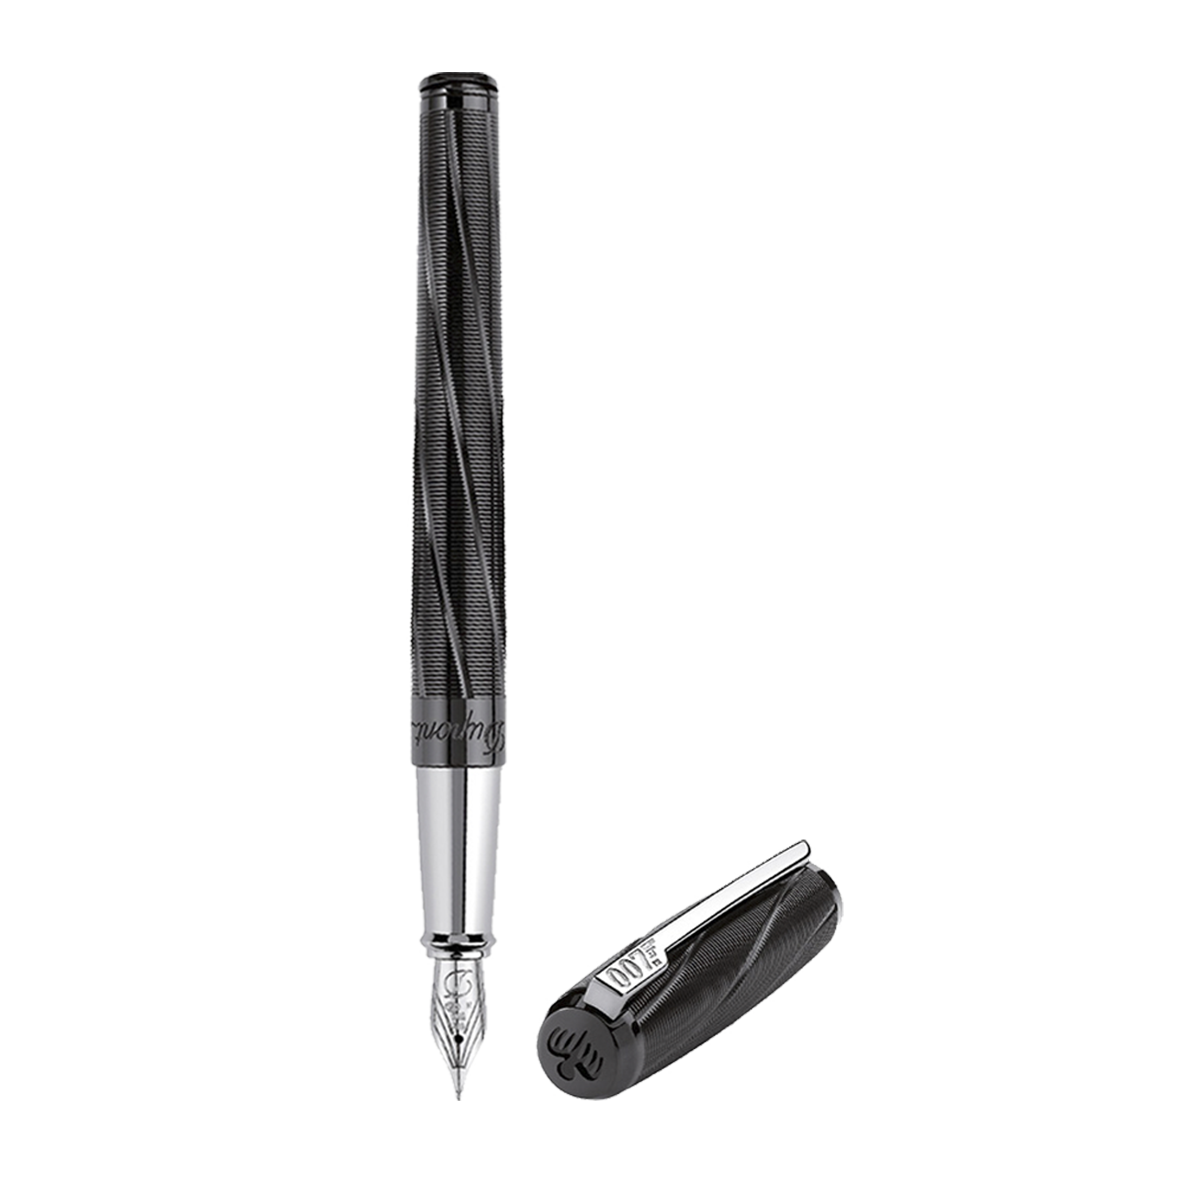 Перьевая ручка Premium James Bond 141034 Цвет Чёрный Отделка чёрным PVD покрытием | S.T. Dupont